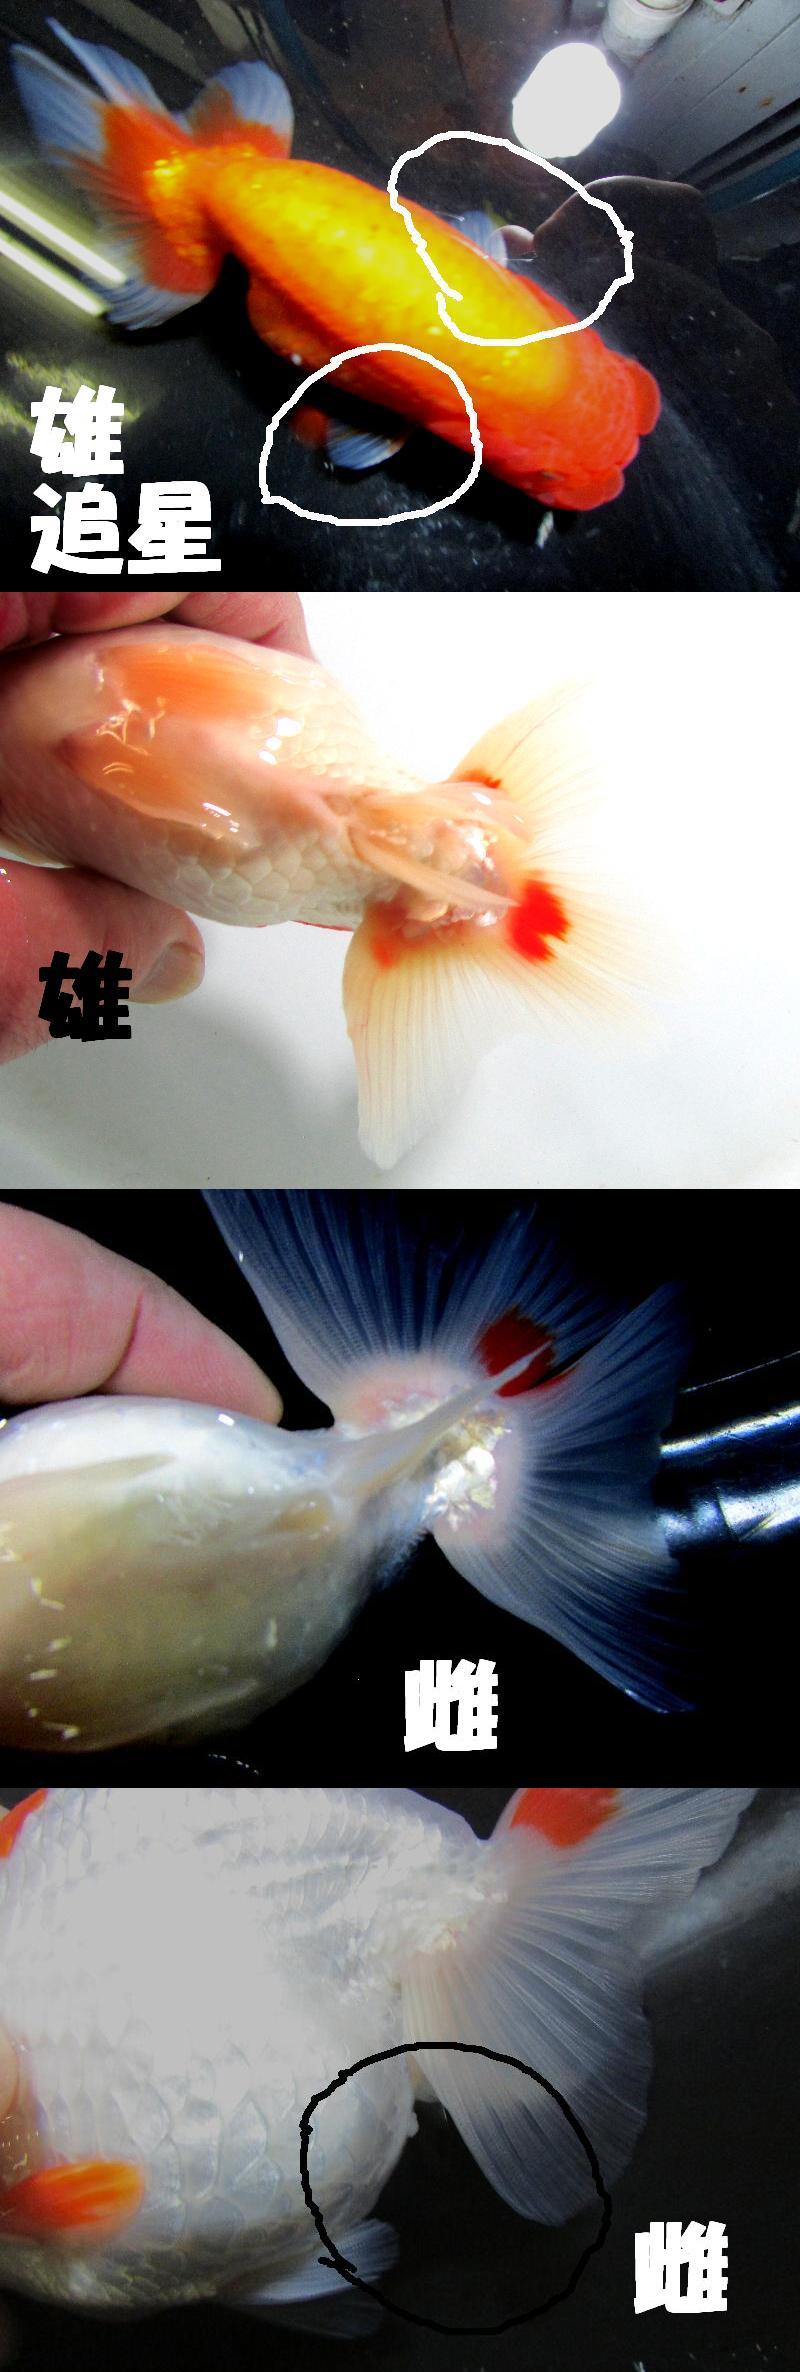 雄と雌の判別の方法 金魚一道ブログ